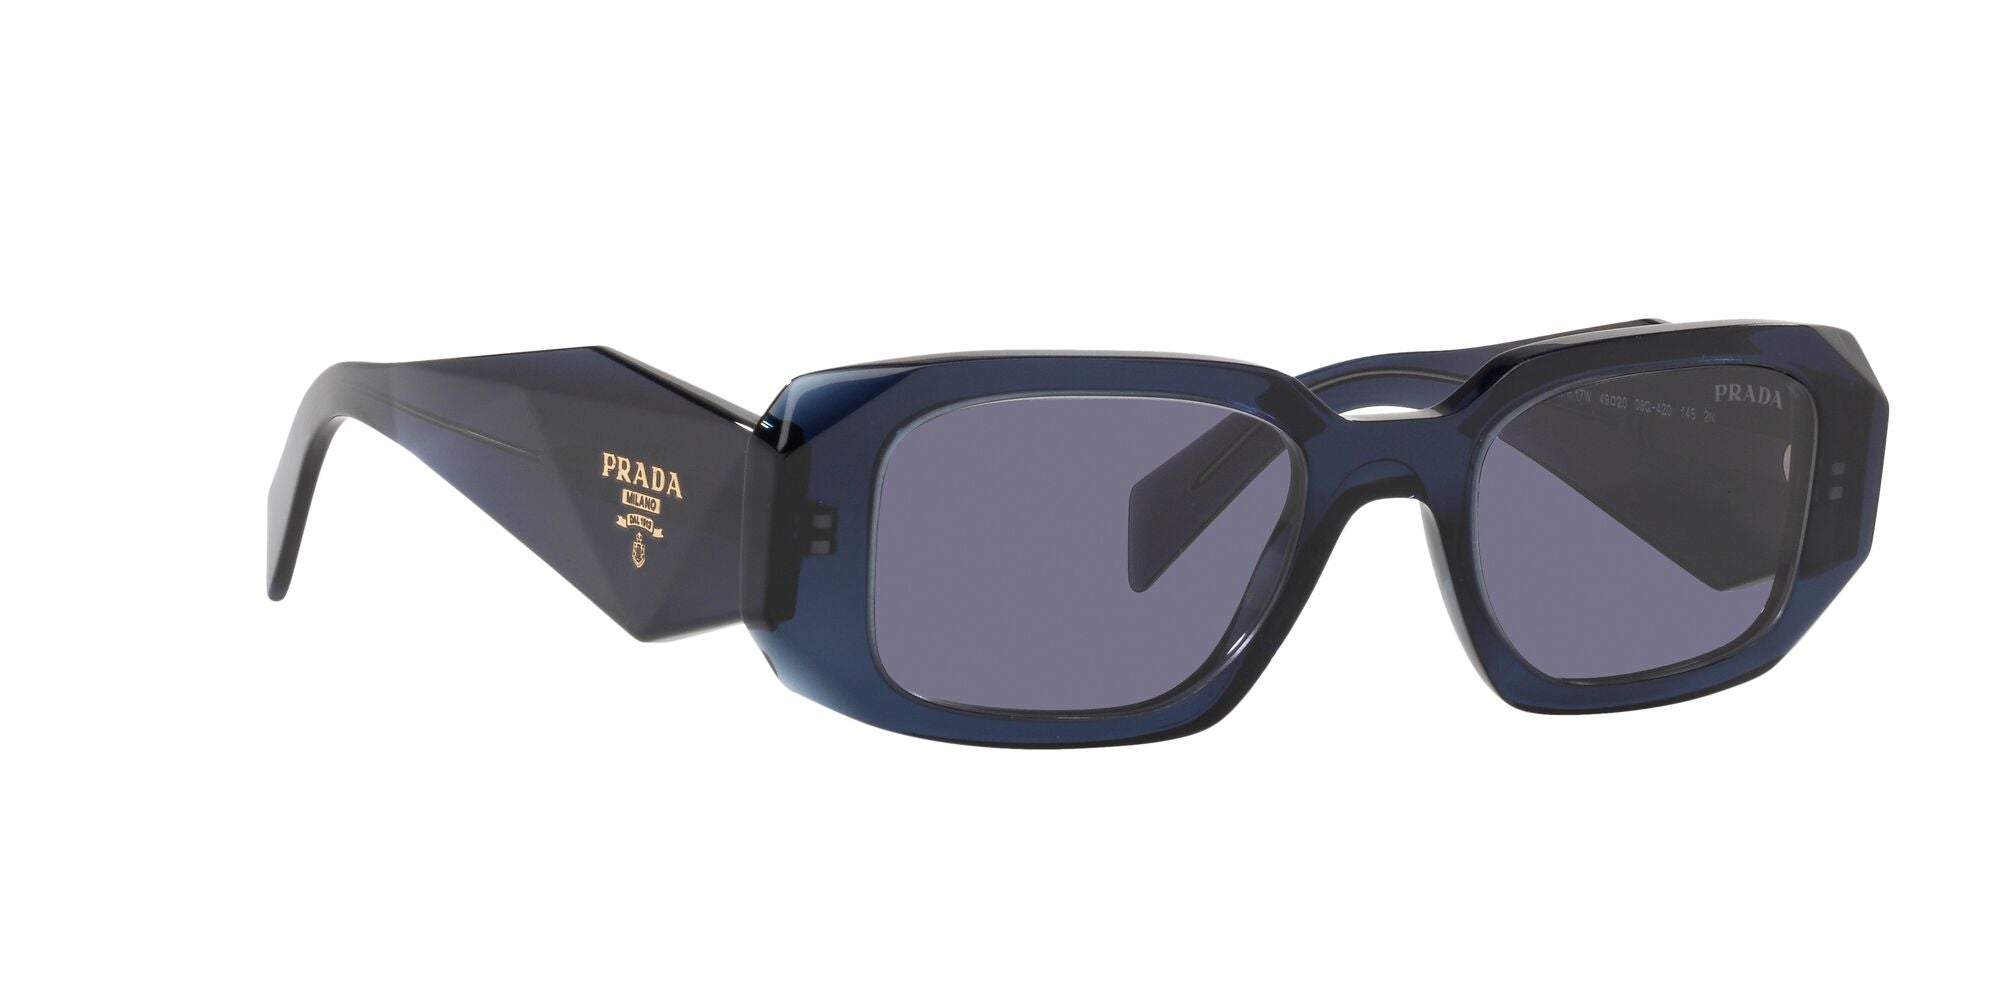 New geometric aviator sunglasses PRADA SPR62X col. black and white |  Occhiali | Ottica Scauzillo